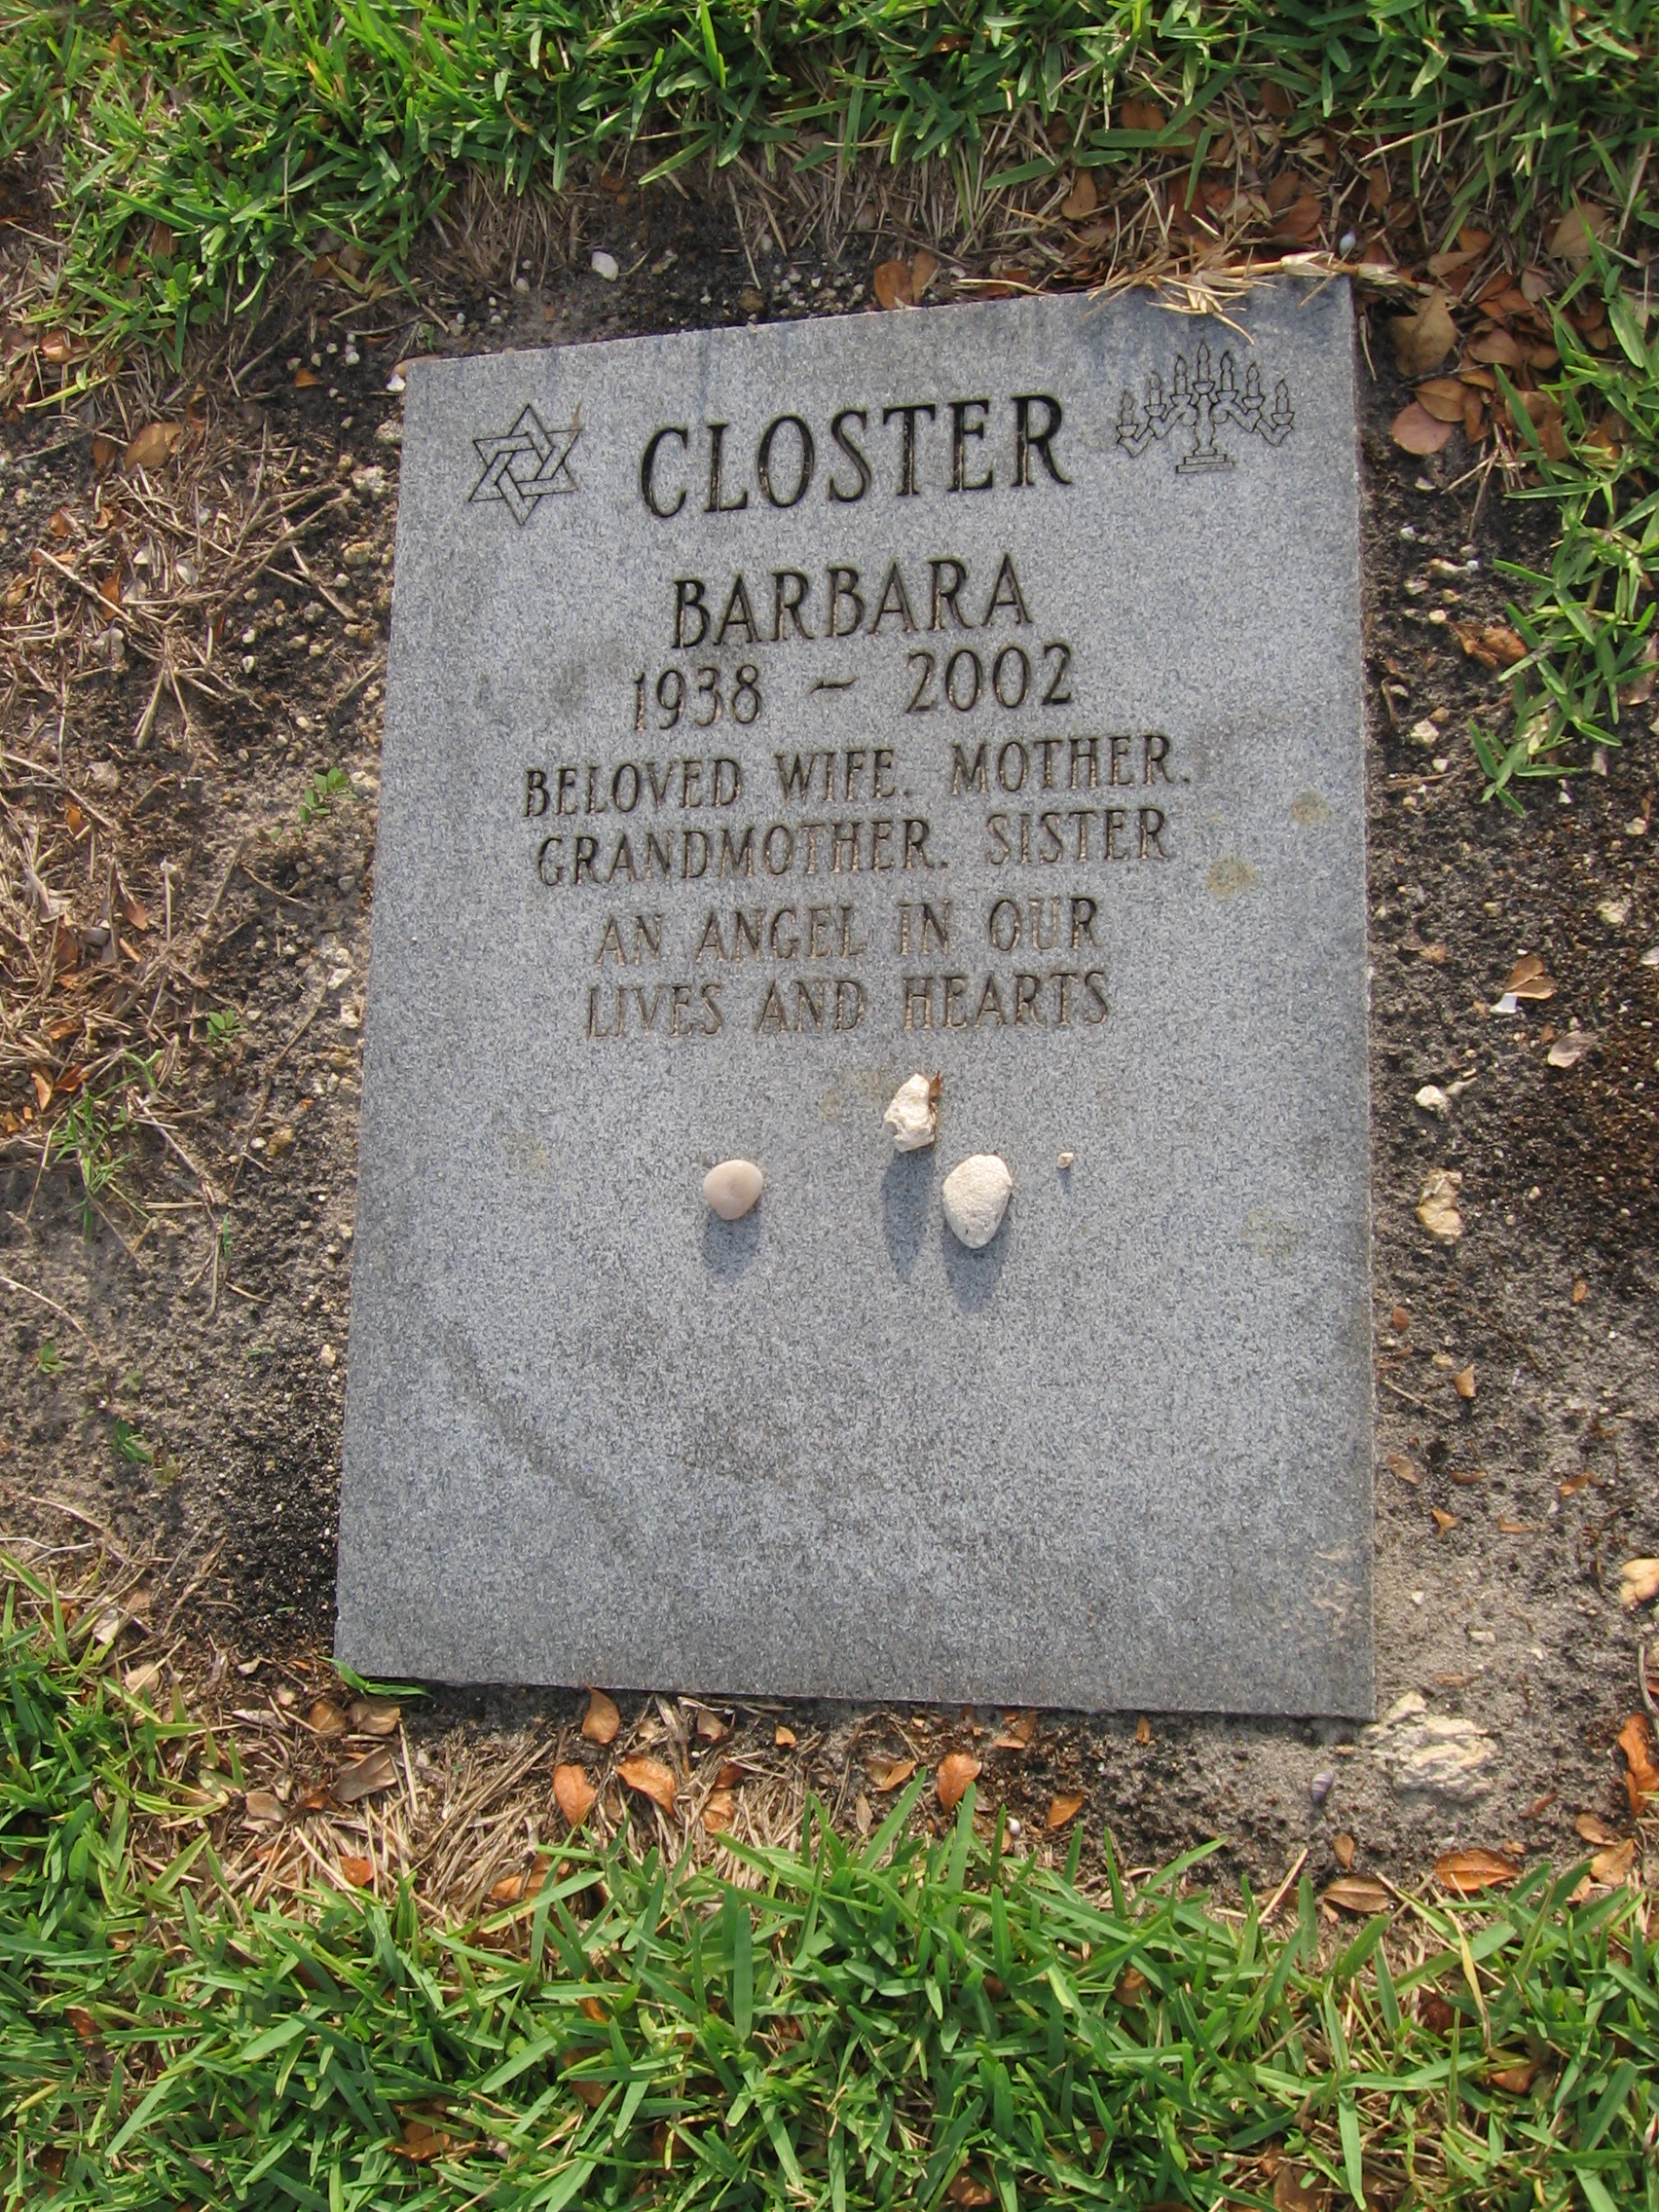 Barbara Closter